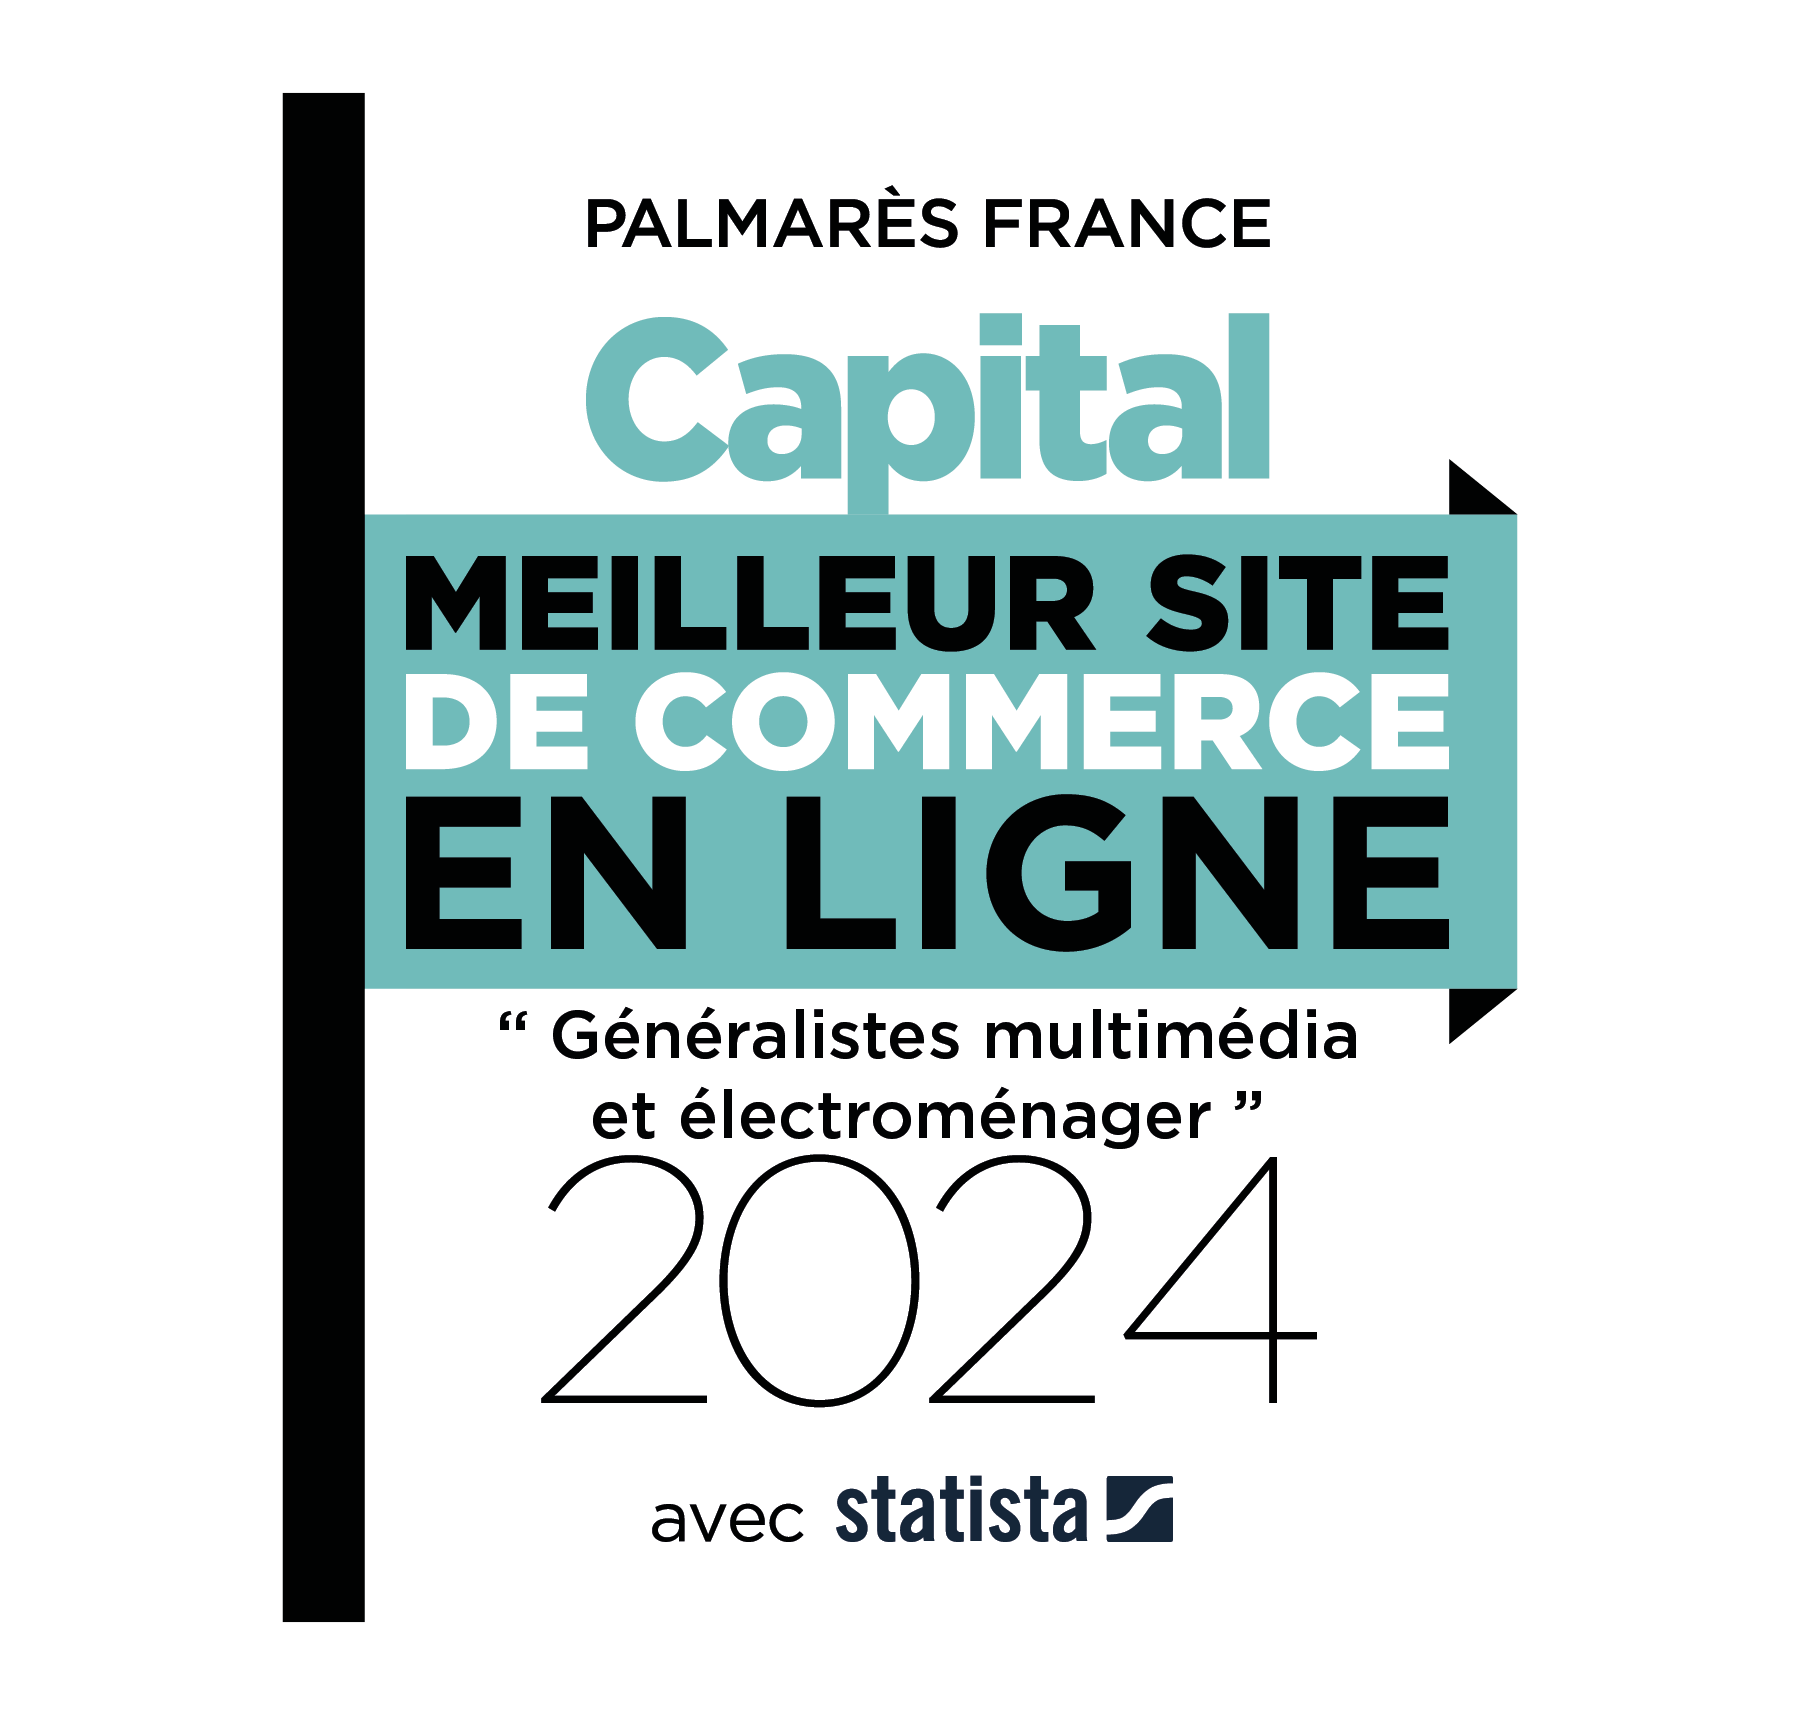 Meilleur site de commerce en ligne "Généralistes multimédia et électroménager 2024" - Magazine CAPITAL